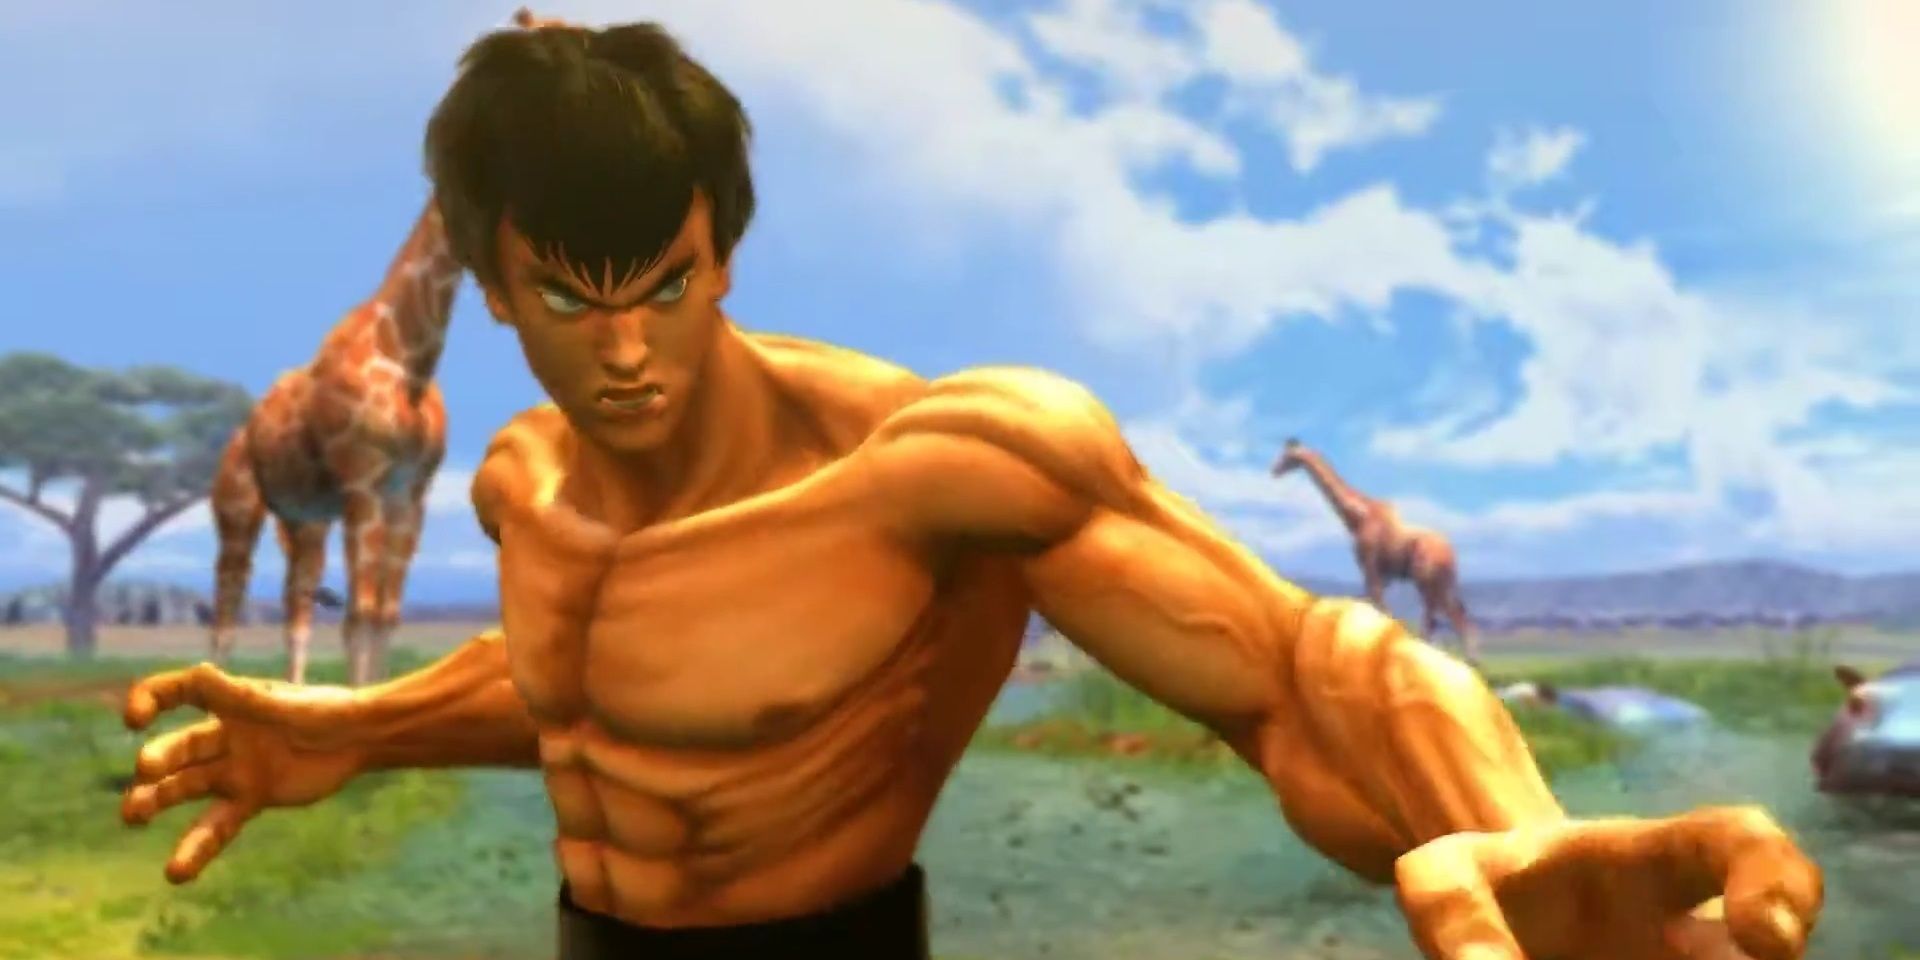 Fei Long is Street Fighter II's Bruce Lee